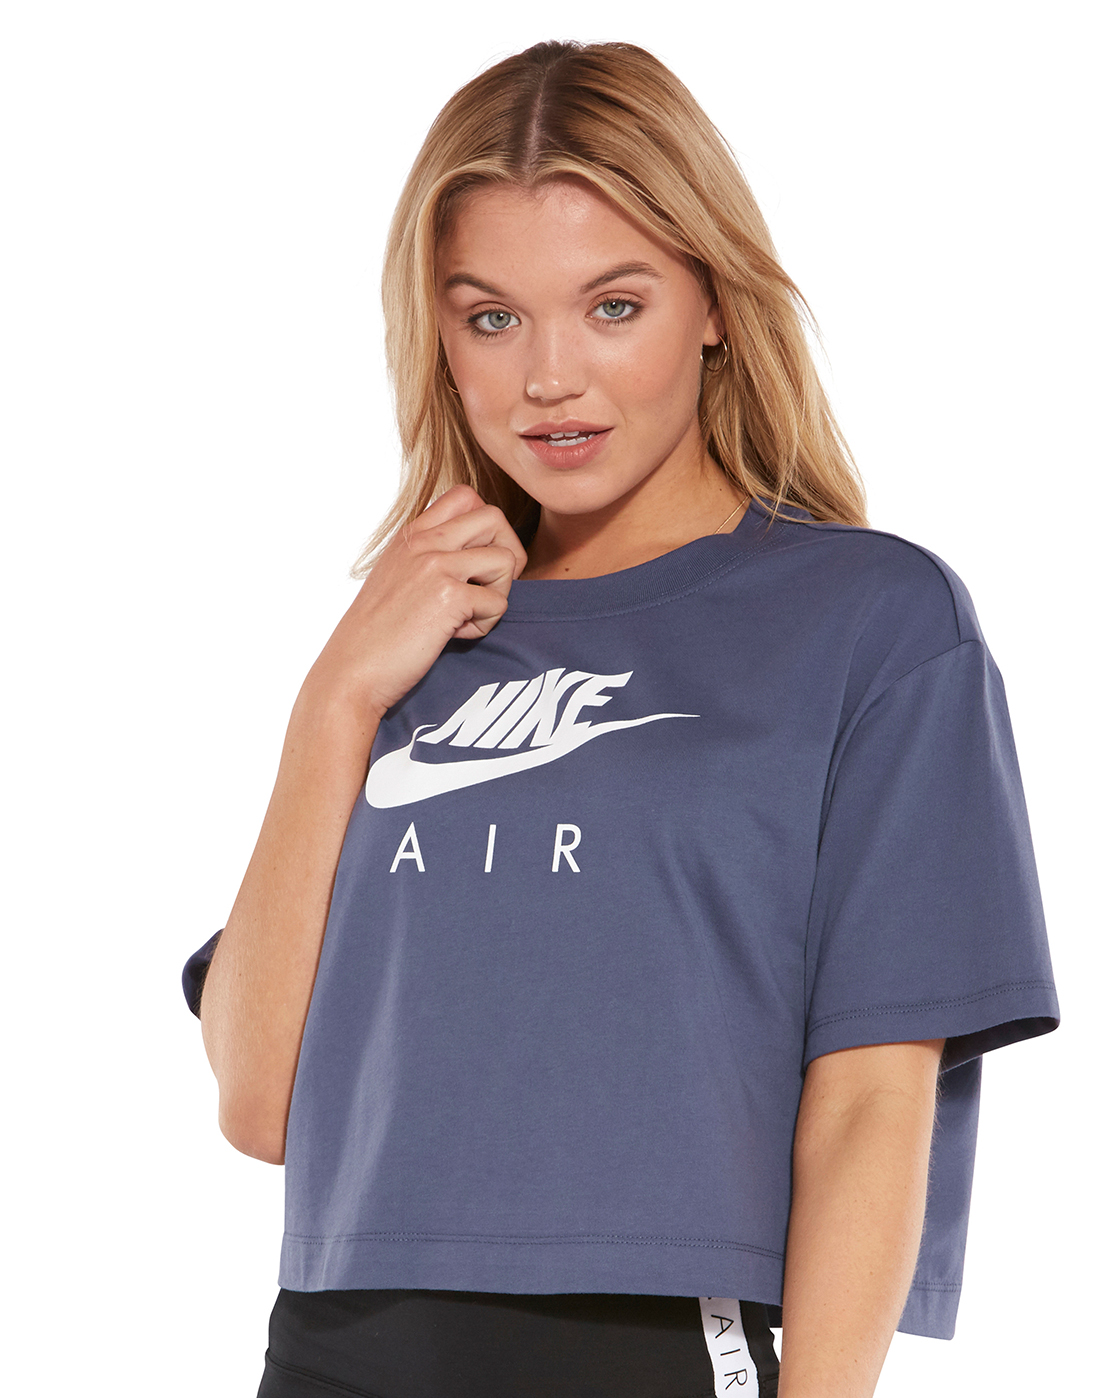 nike air shirts womens